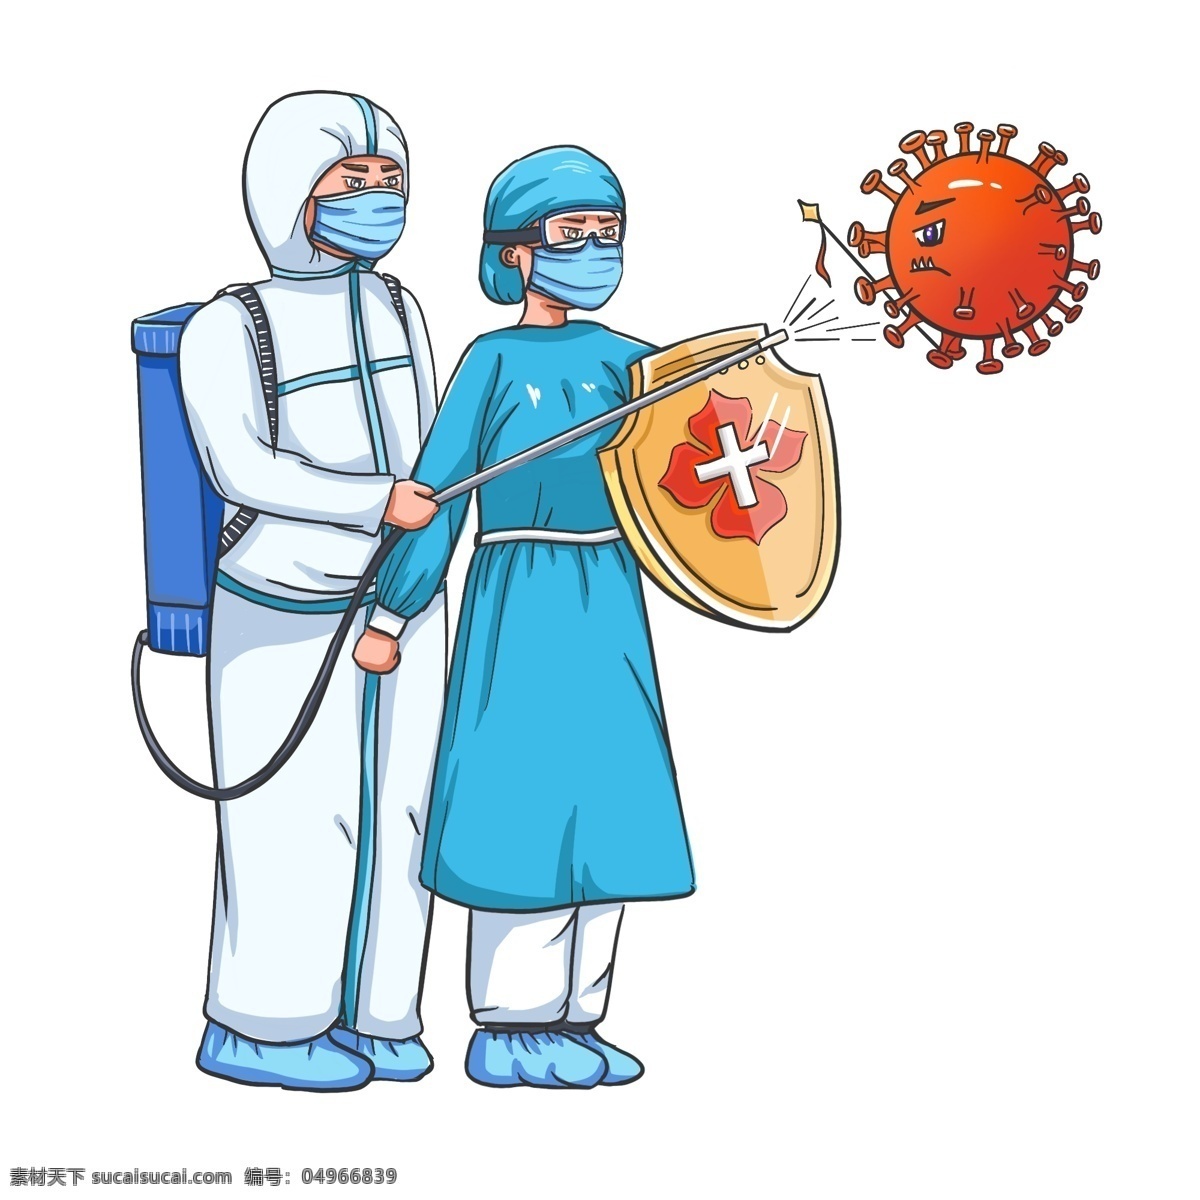 医护 人员 战胜 病毒 卡通 可爱 手绘 保护 病情 对抗 盾牌 防护服 防疫 肺炎 隔离 护士 加油 健康 动漫动画 动漫人物